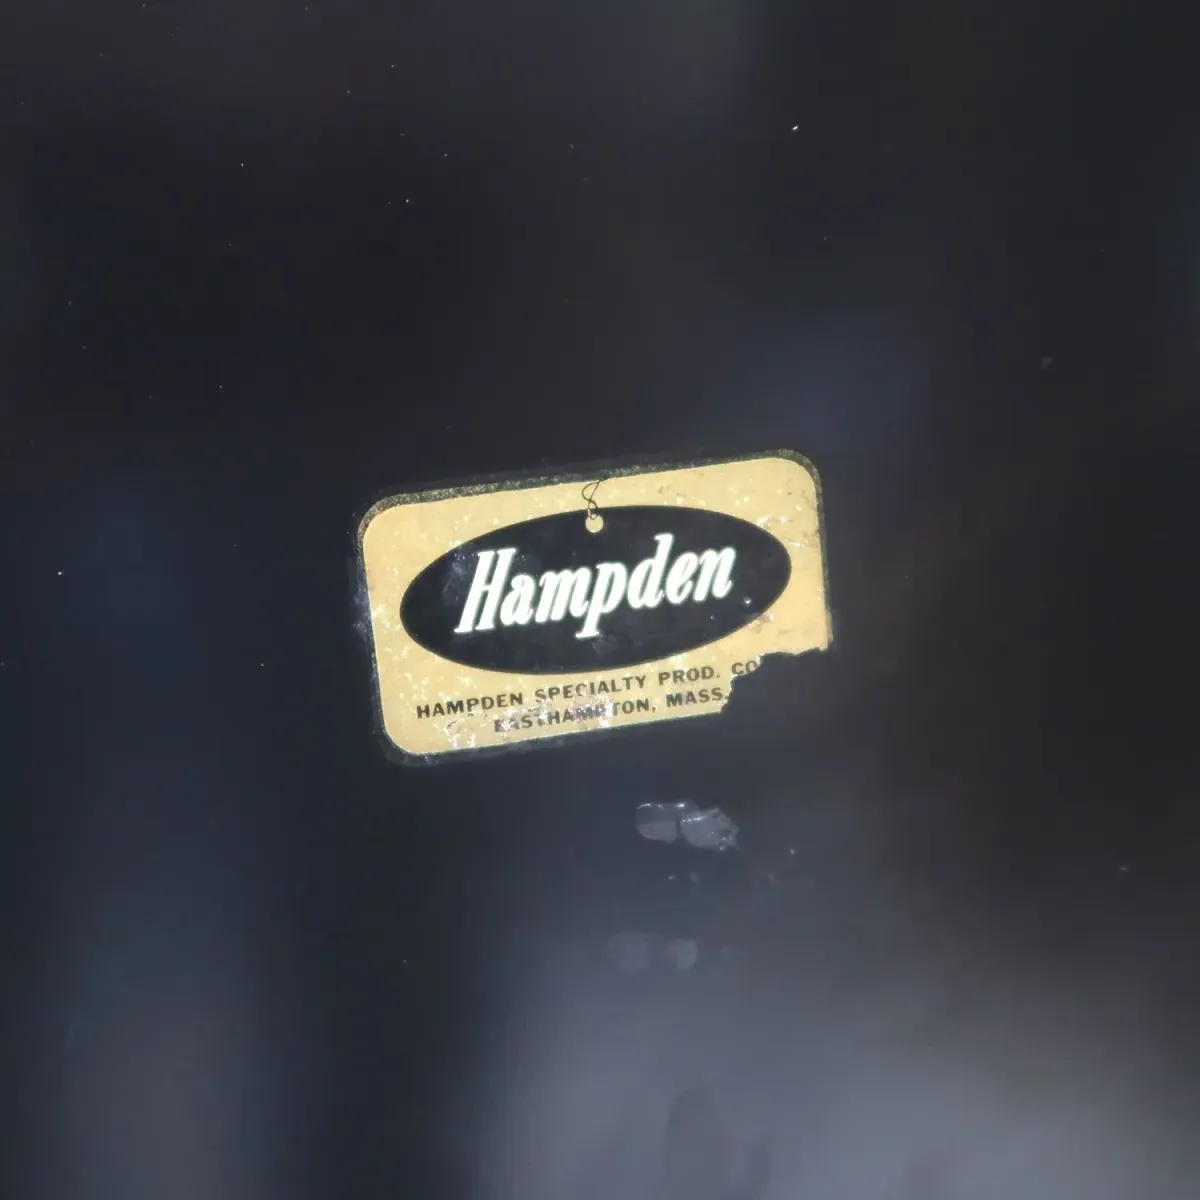 Hampden ビンテージ フォールディングチェア